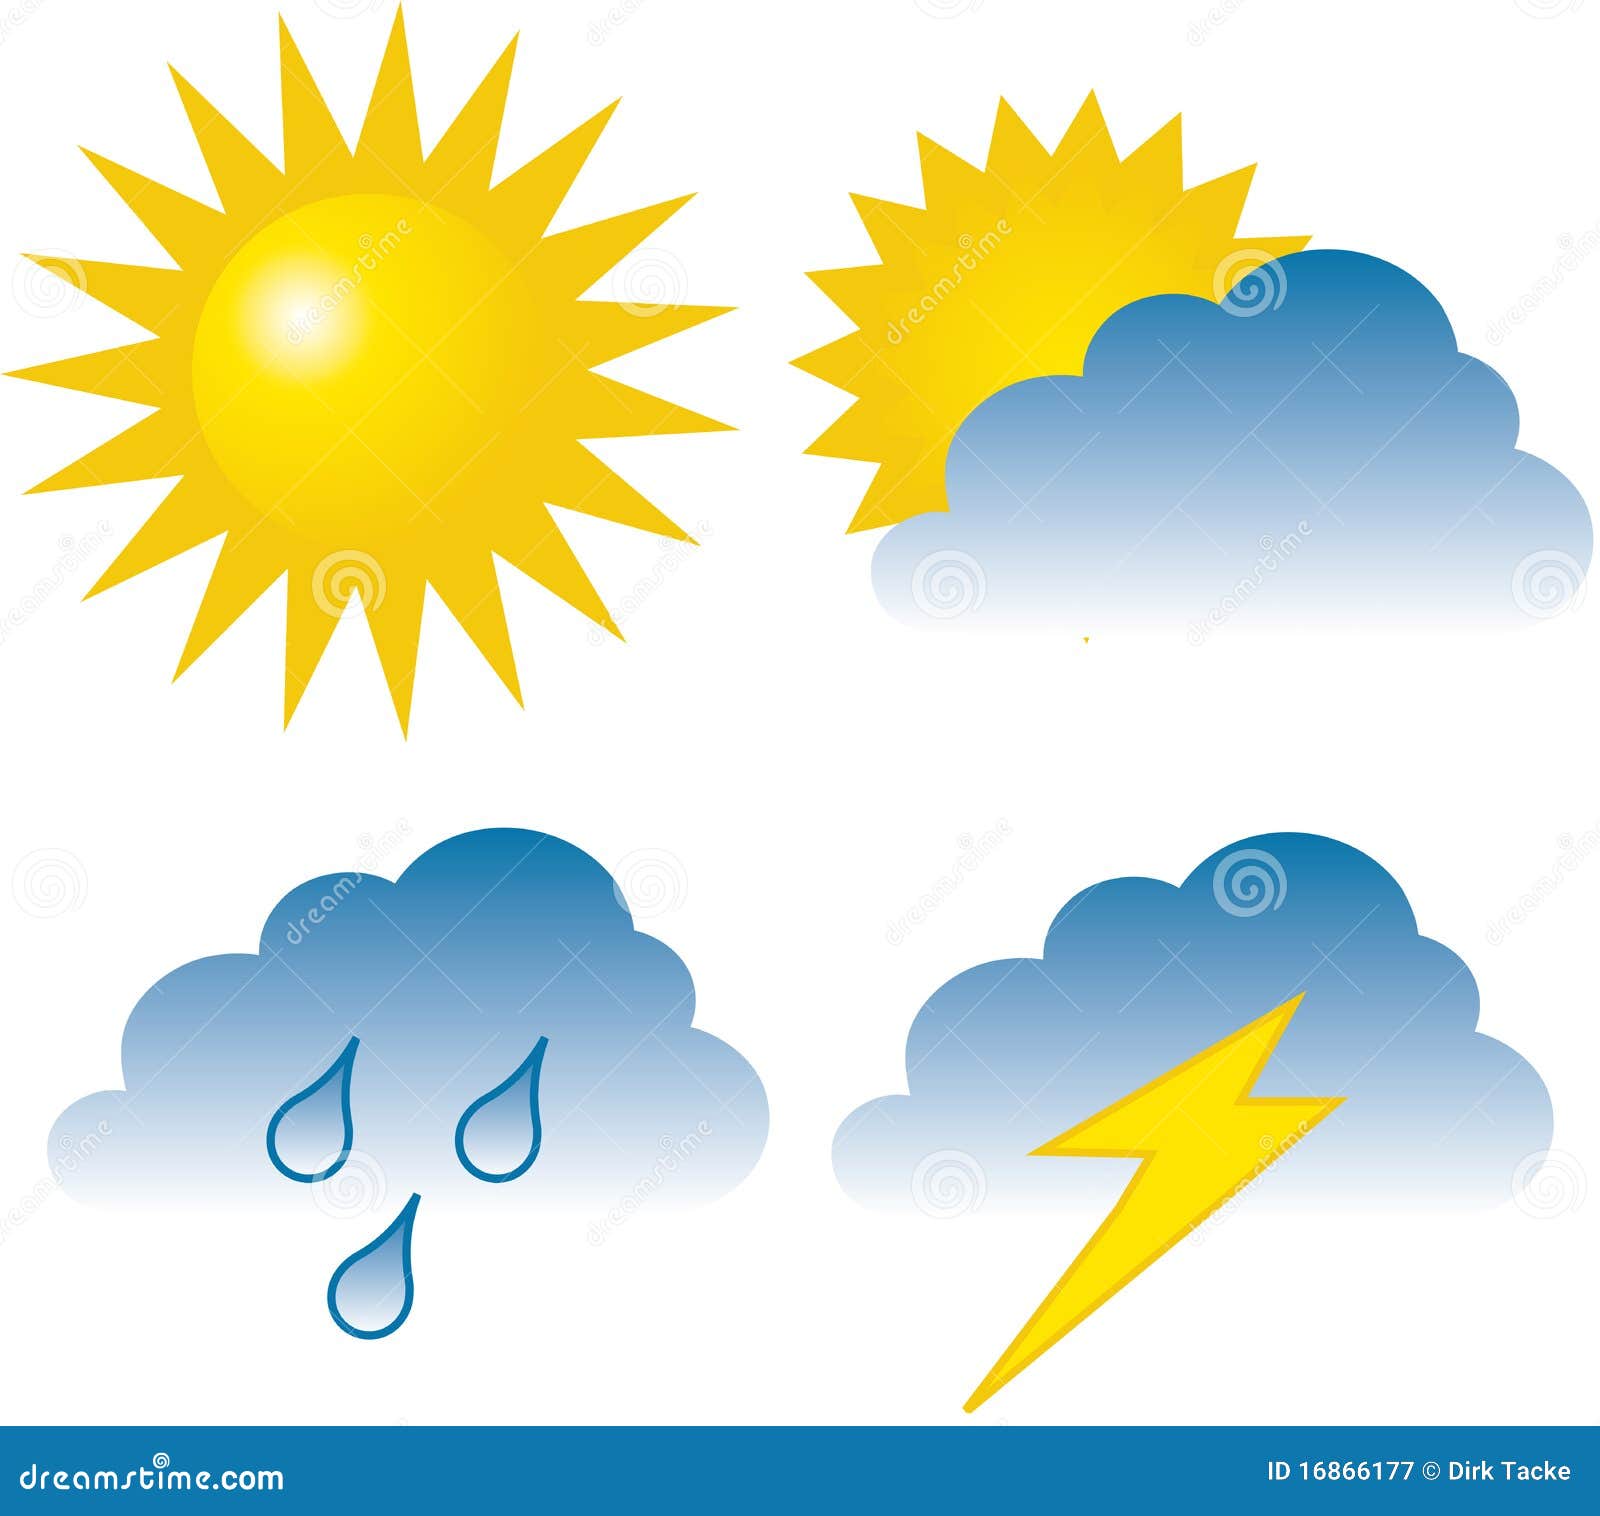 Рисунок ясной погоды. Погодные явления для детей. Погода картинки. Погодные знаки и изображения. Символы природных явлений.